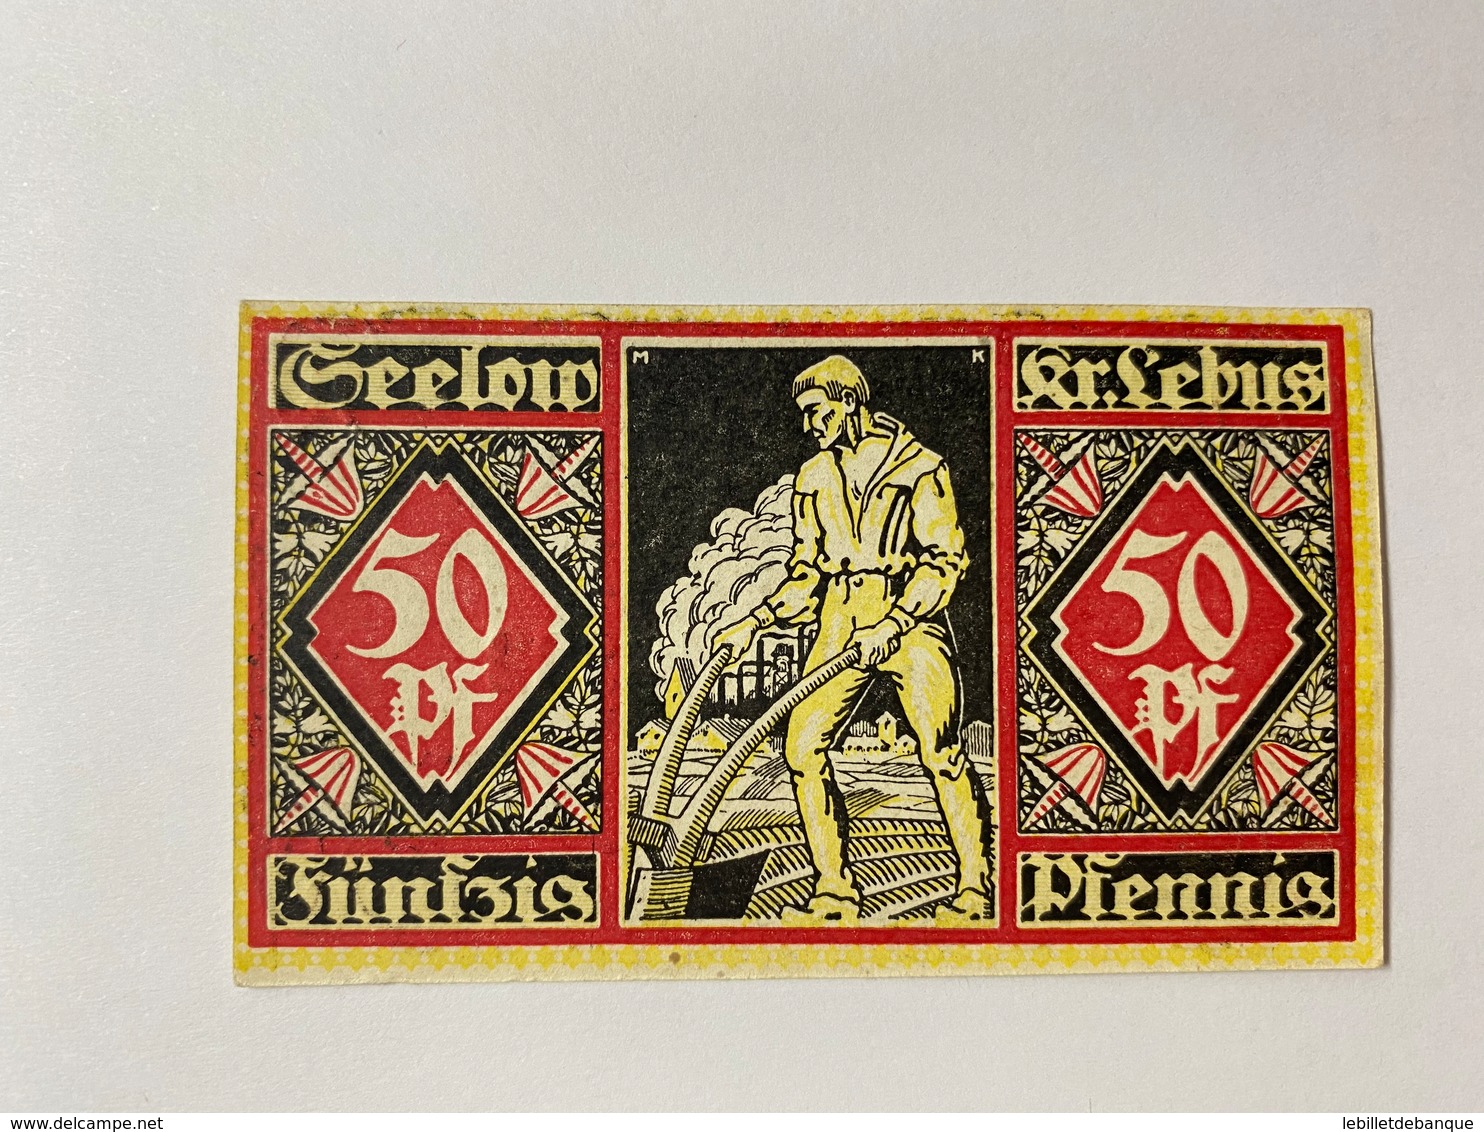 Allemagne Notgeld Geelow 50 Pfennig - Collections